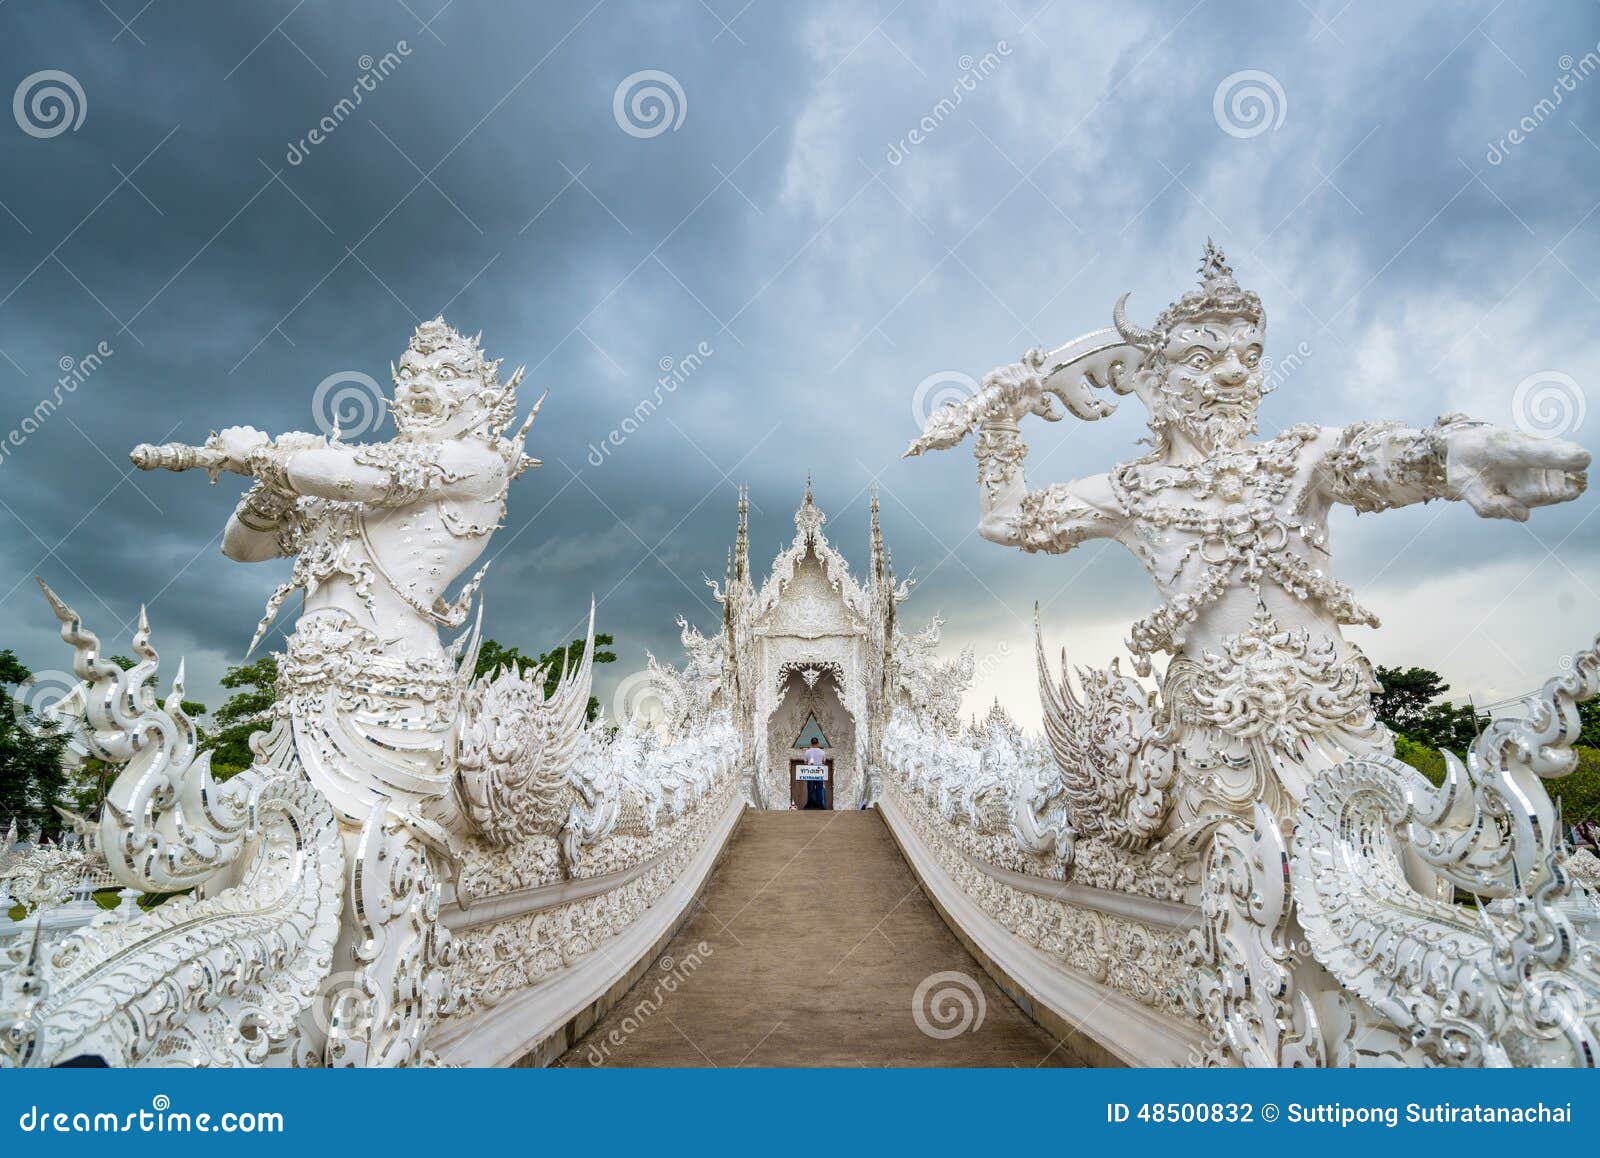 För thailand för tempel för uppgift för rong för rai för khun för härlig chiang för konstdragningar kulturell fin white wat